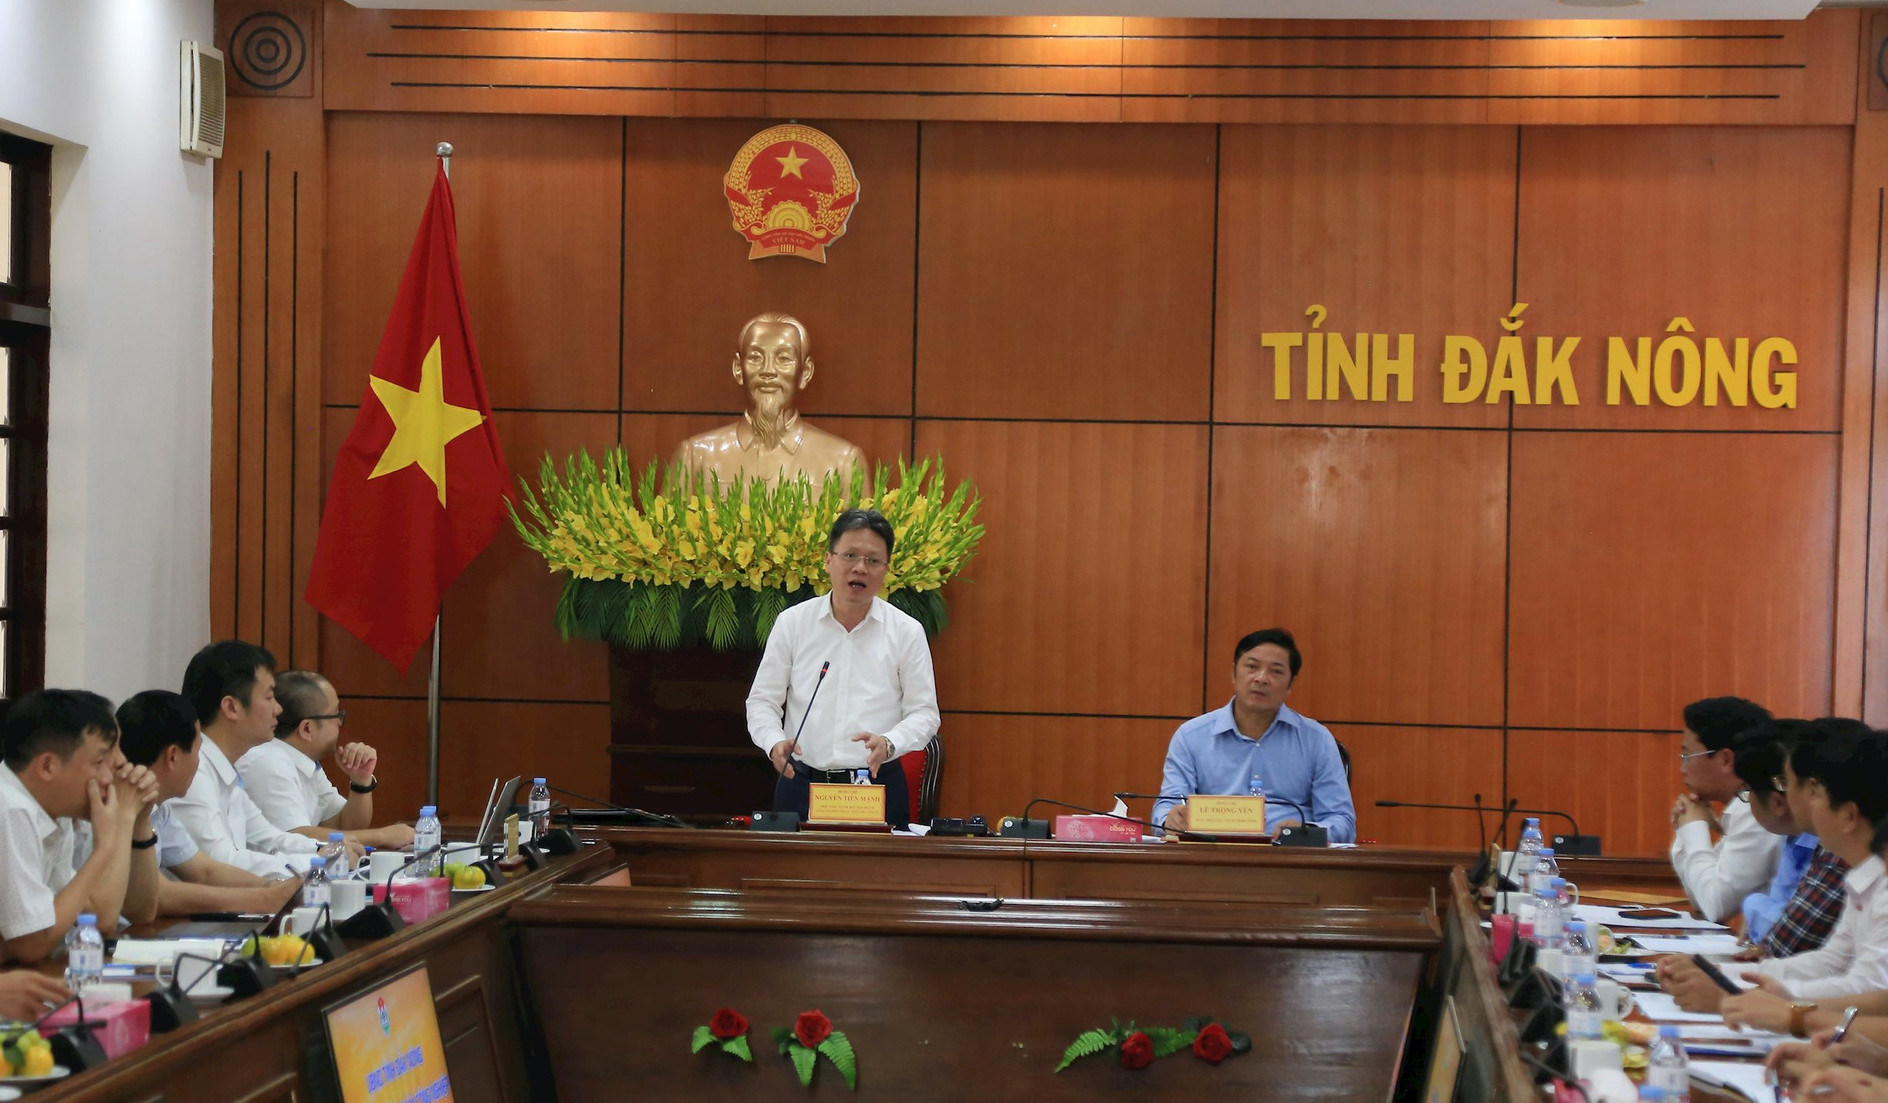 Tỉnh Đắk Nông làm việc với Tập đoàn Công nghiệp Than - Khoáng sản Việt Nam. Ảnh: Phan Tuấn 